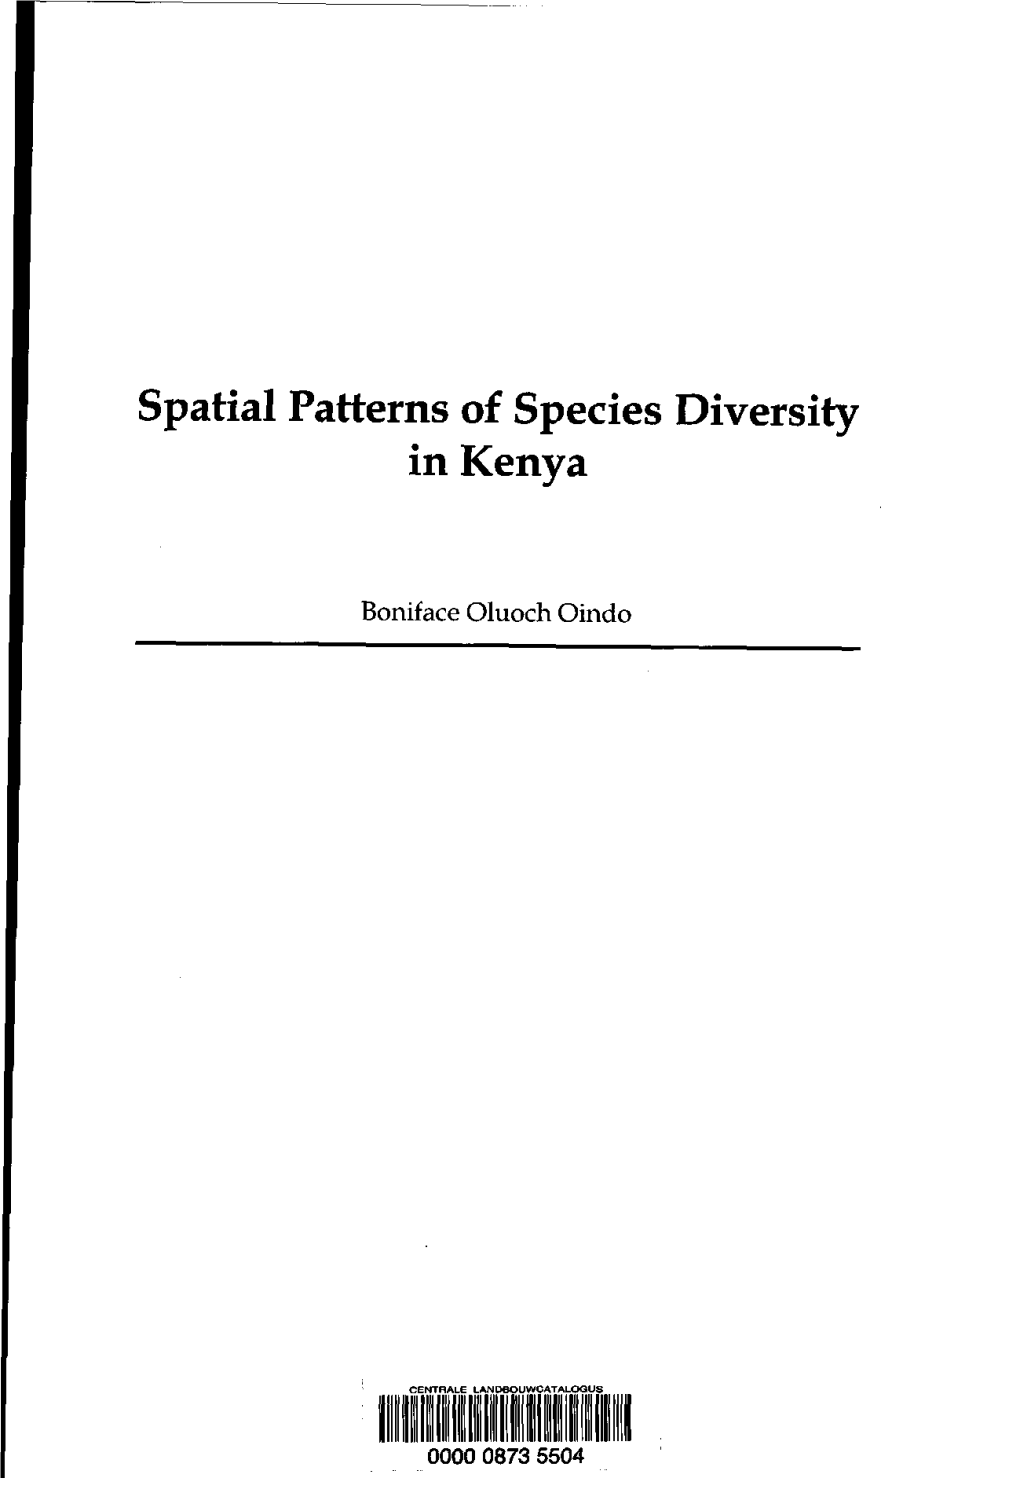 Spatial Patterns of Species Diversity in Kenya